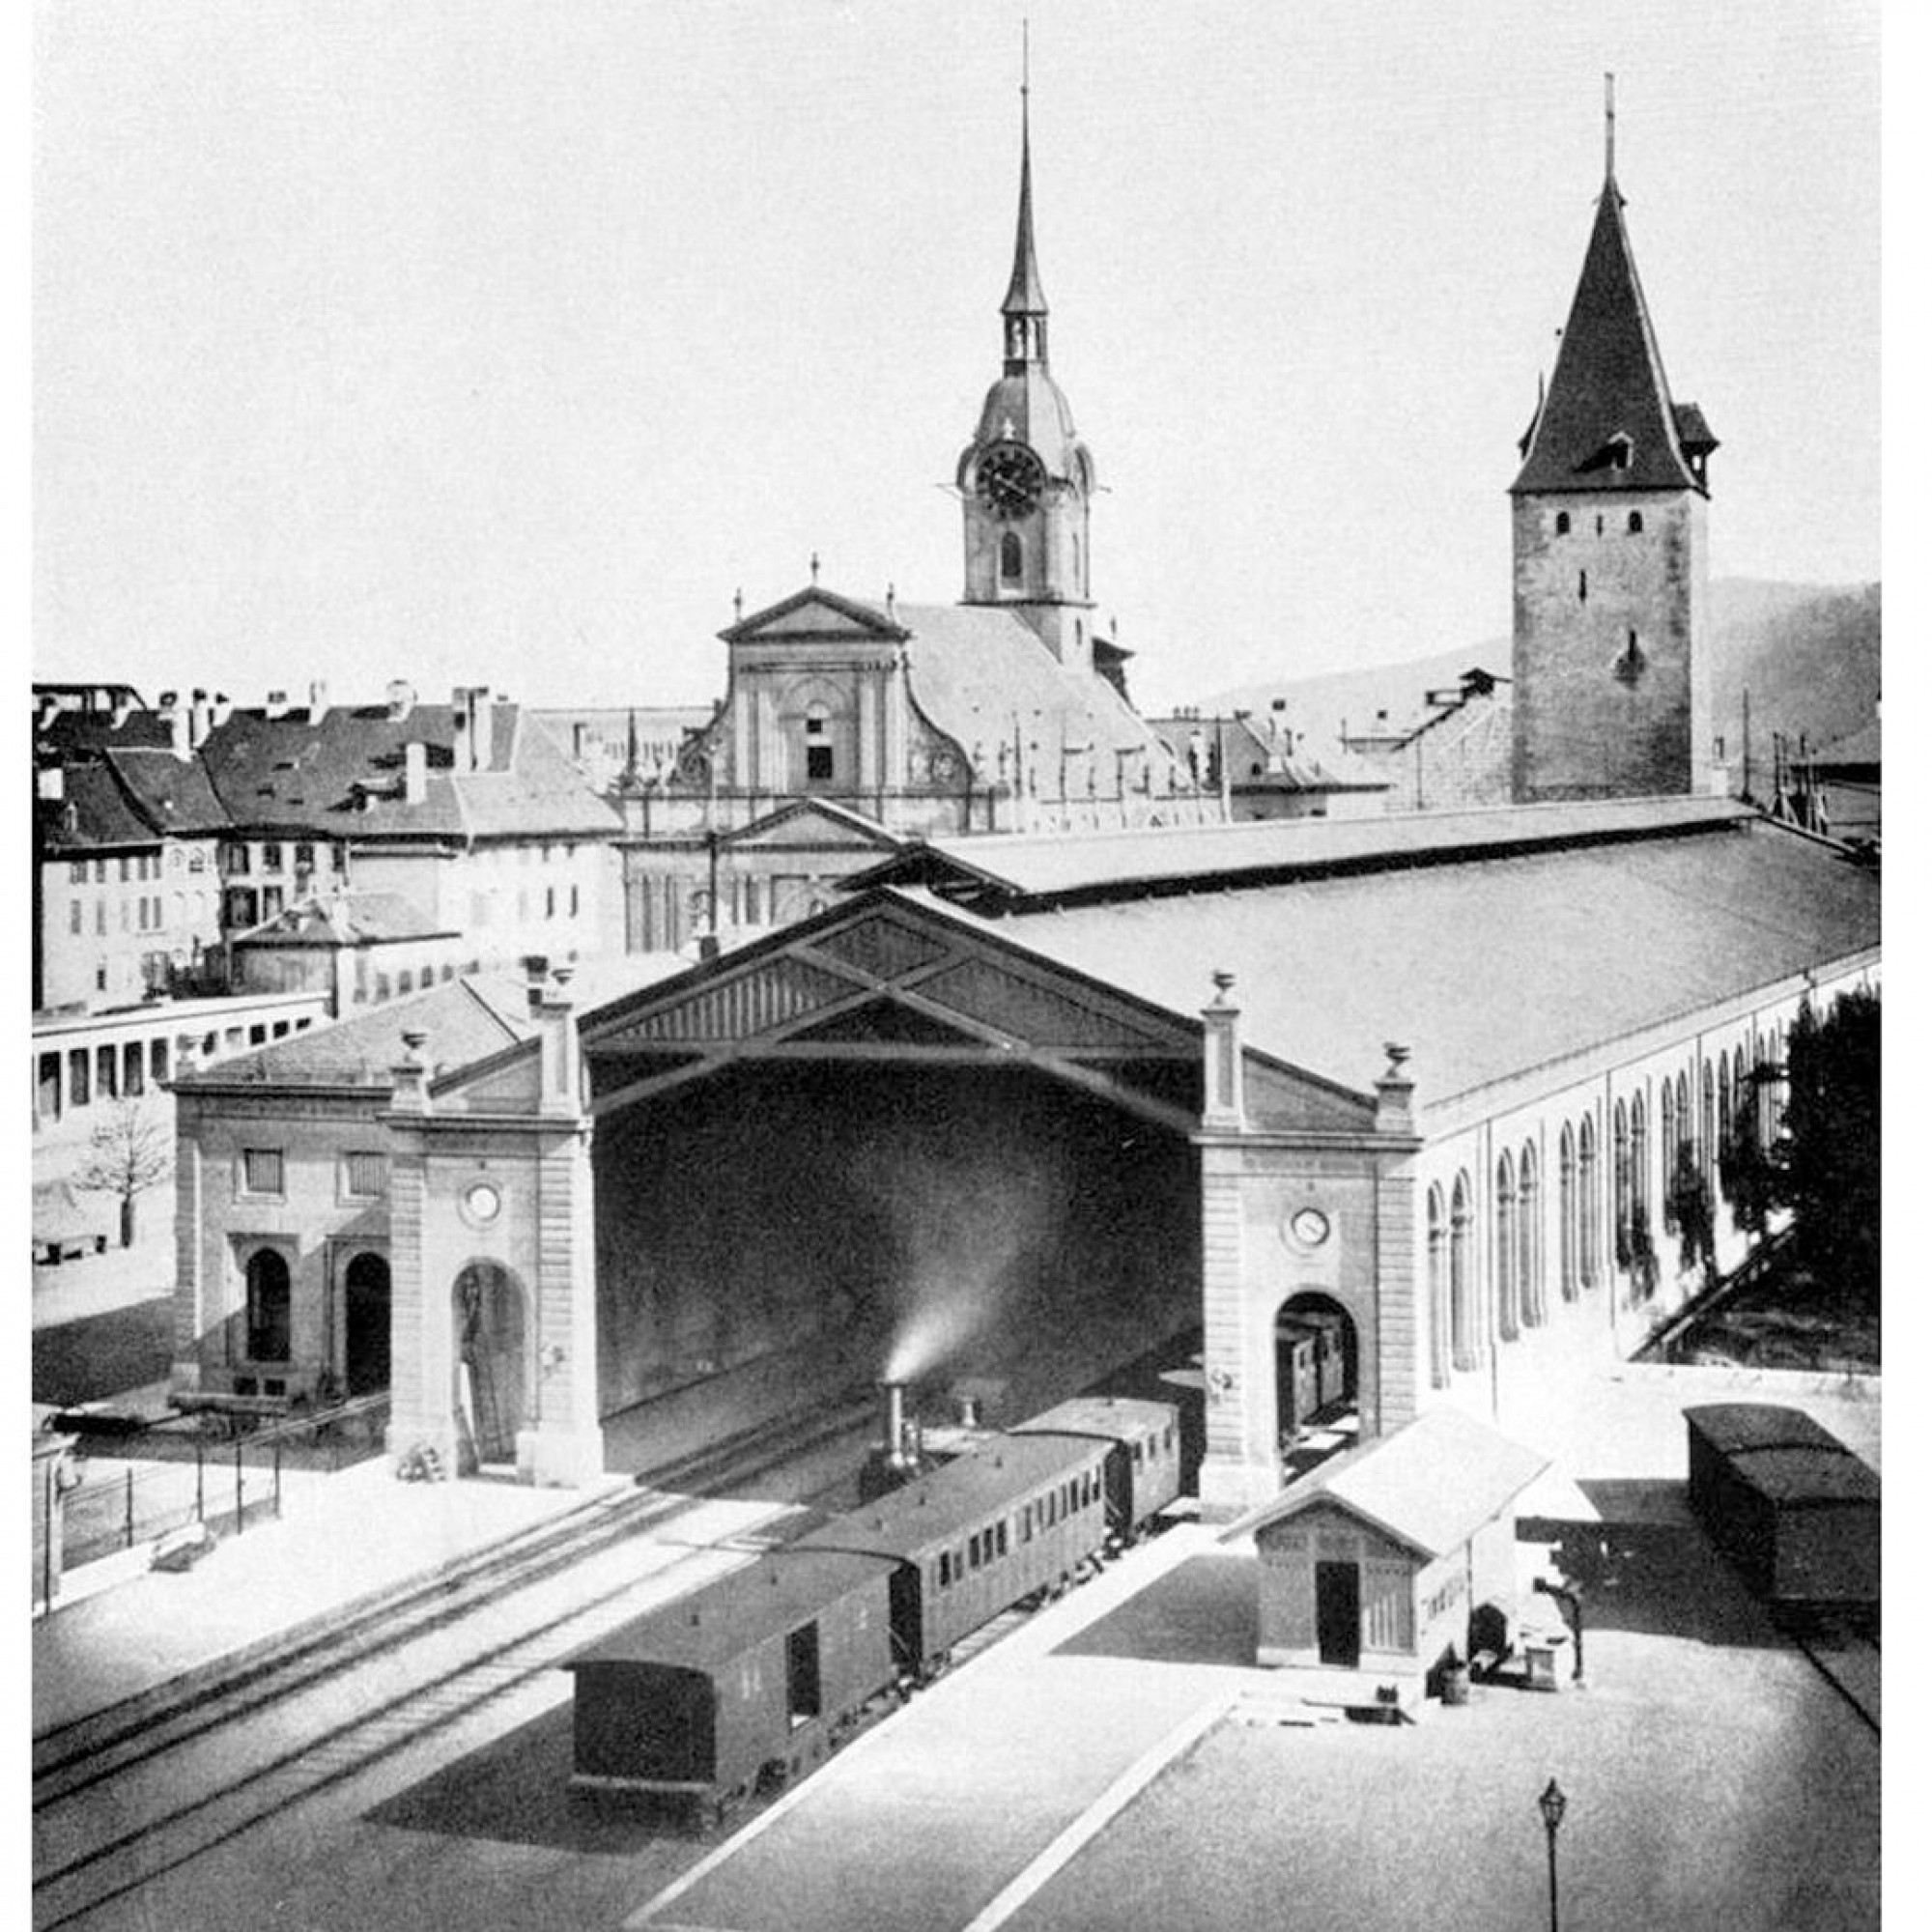 Die Einfahrt in den Bahnhof Bern im Jahre 1860.